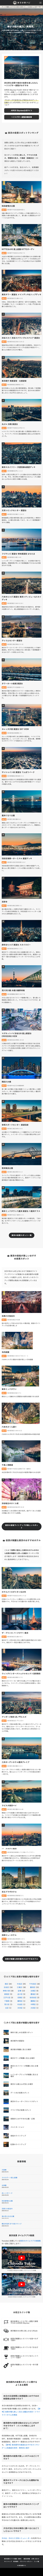 東京のデートや撮影におすすめの夜景スポットがわかる【東京夜景ナビ】